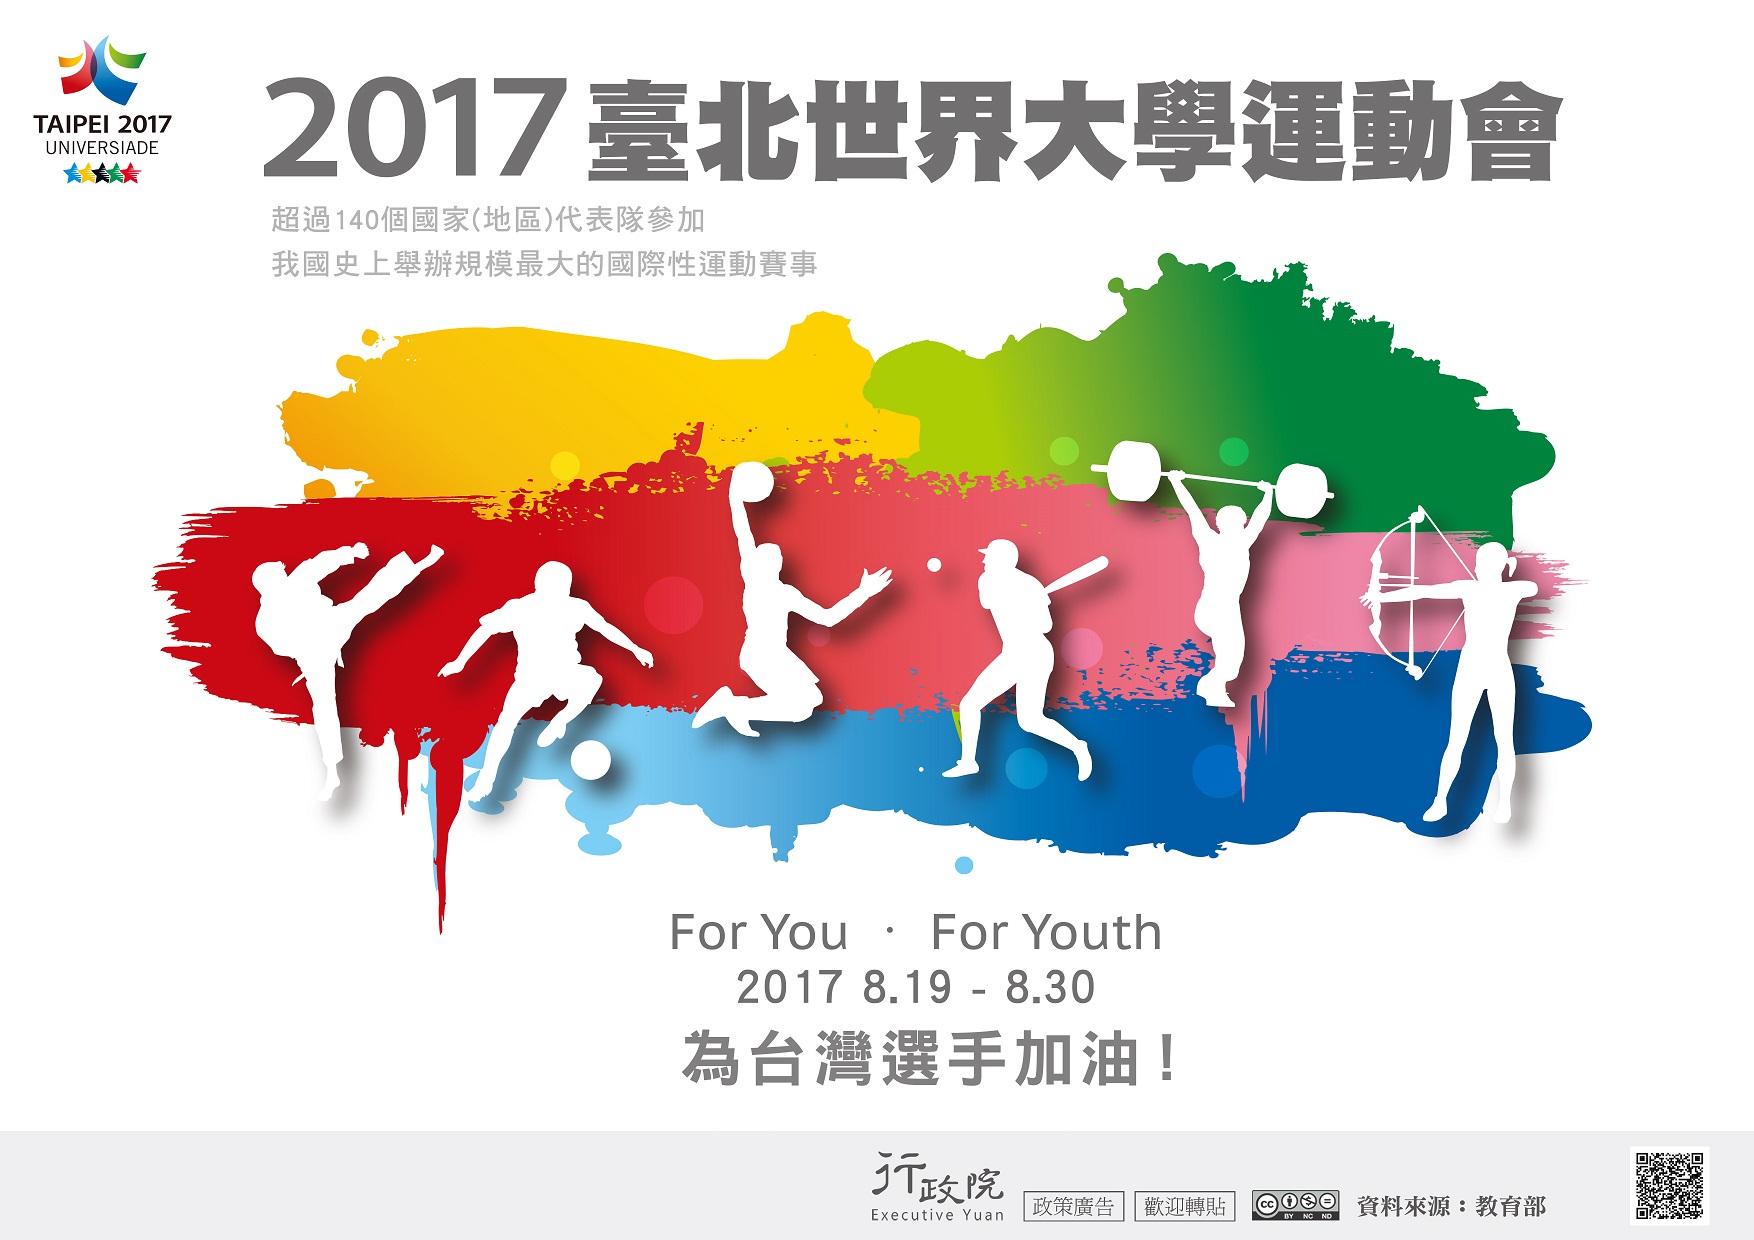 2017臺北世界大學運動會